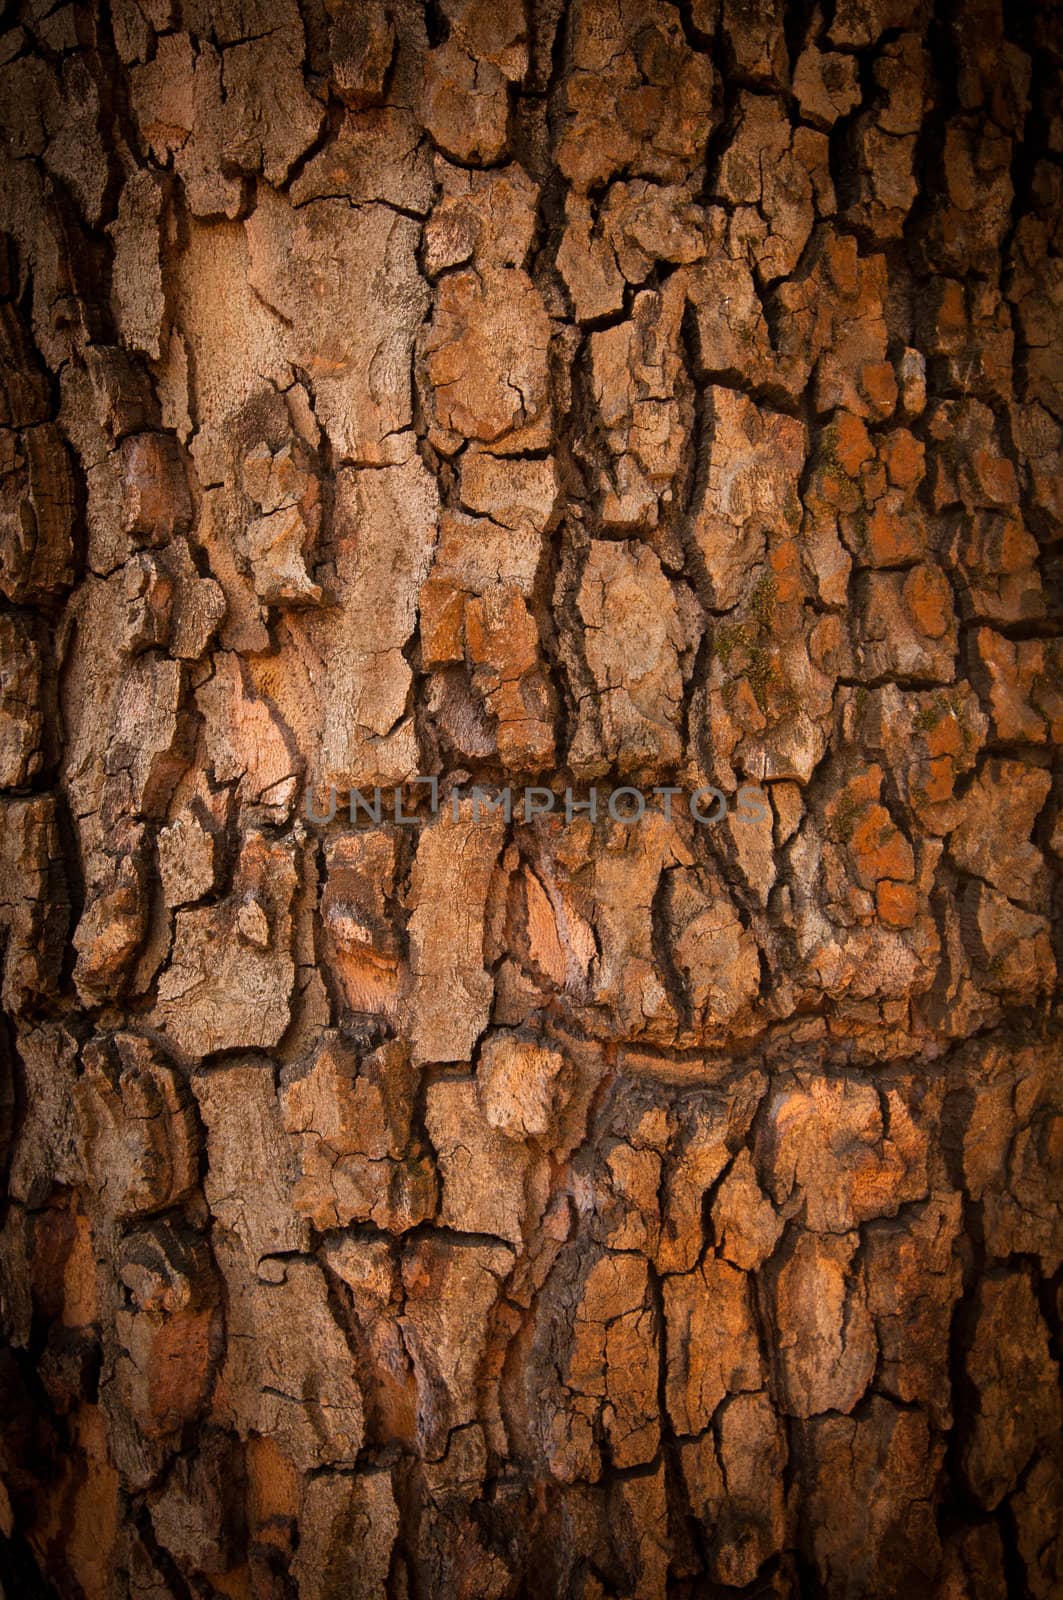 Bark of Pine Tree by nvelichko